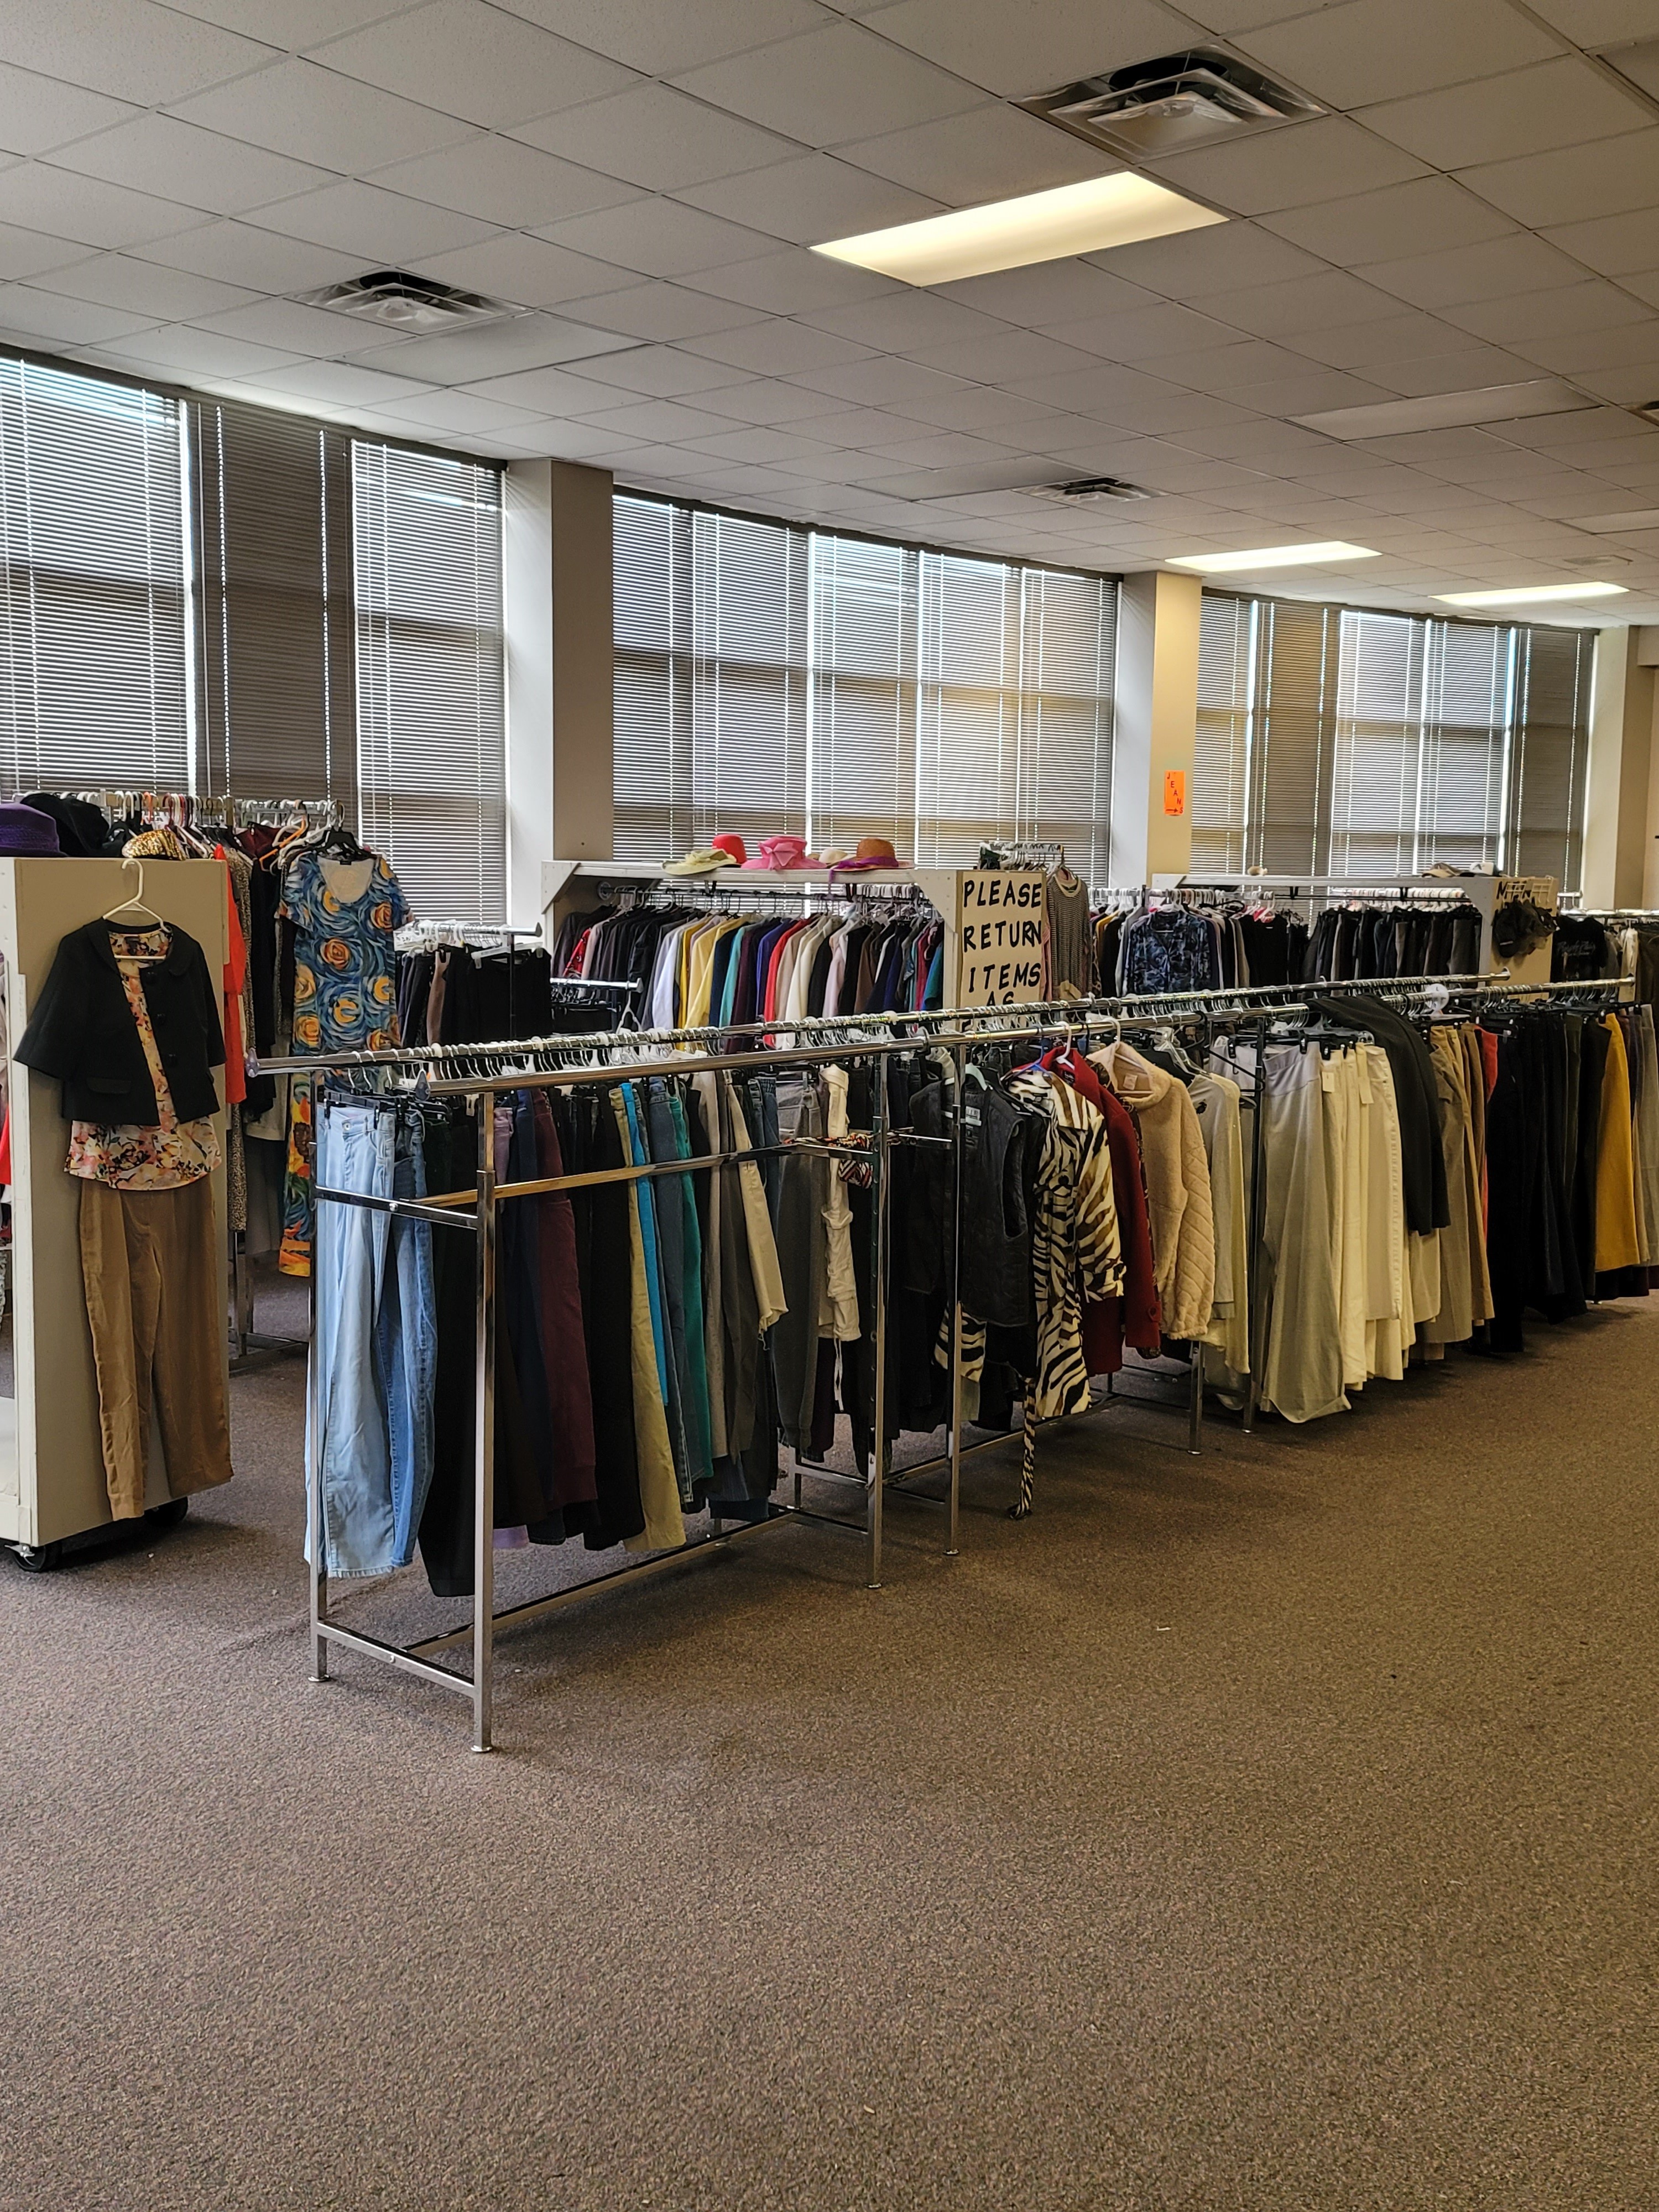 EETC Community Clothes Closet 2023.jpg